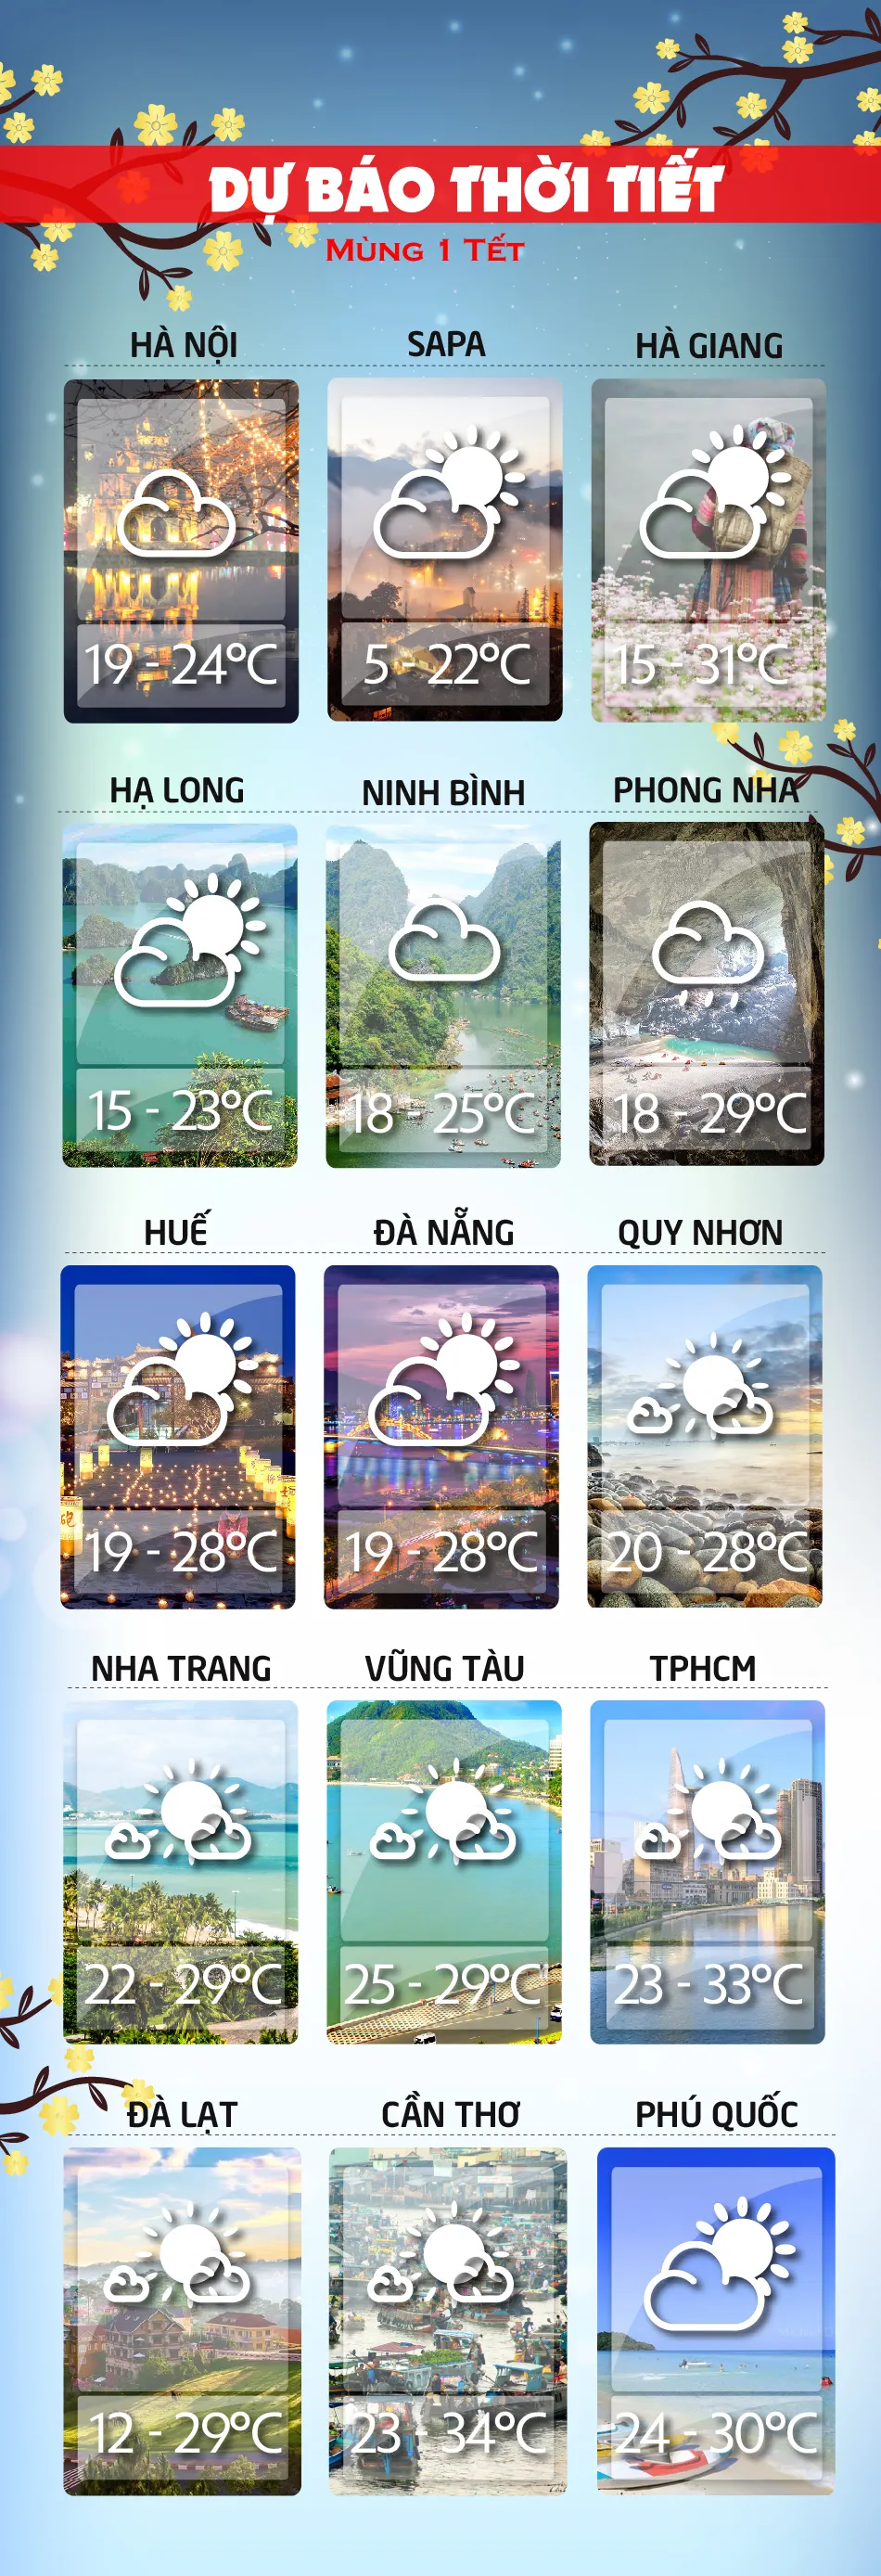 Dự báo thời tiết ngày mai 16-2-18 voh.com.vn